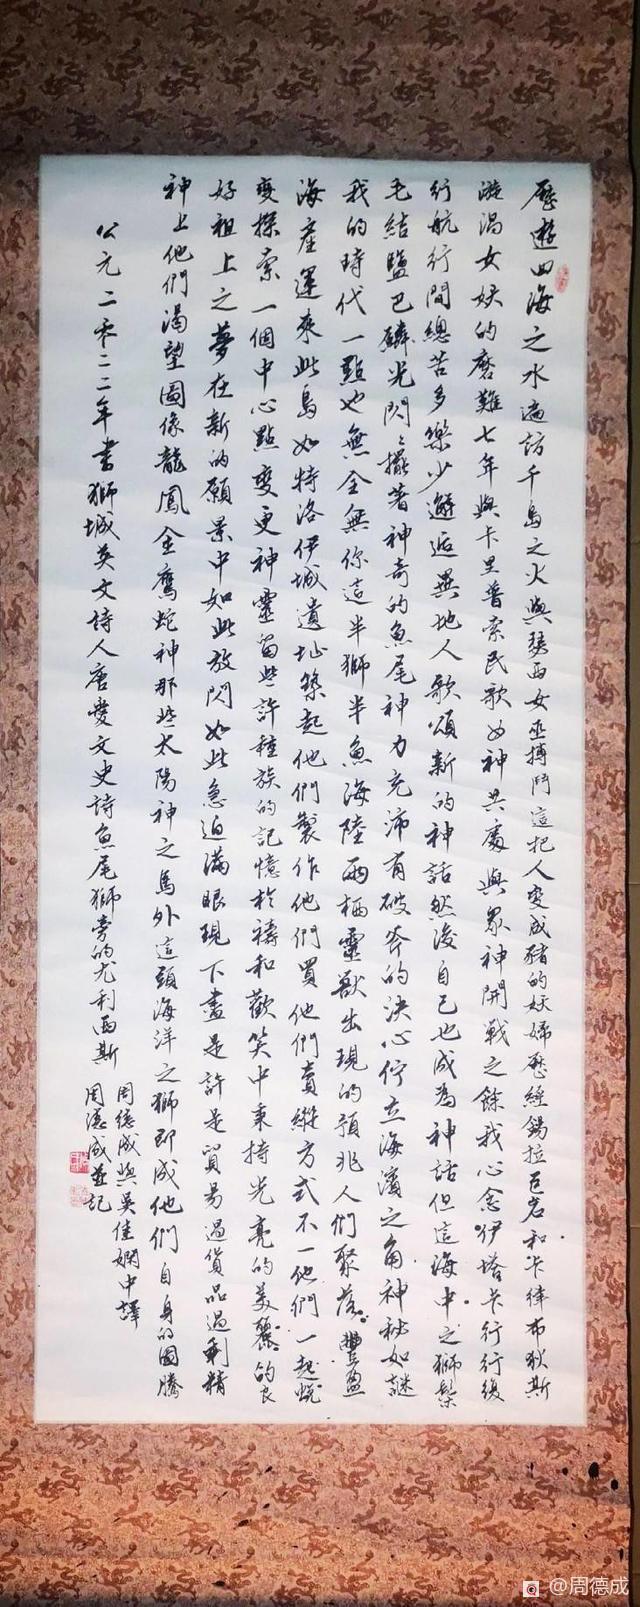 陳志銳 周德成以各語詩翻譯創作成書法繪畫 月底到國慶舉辦《詩的變形記》展